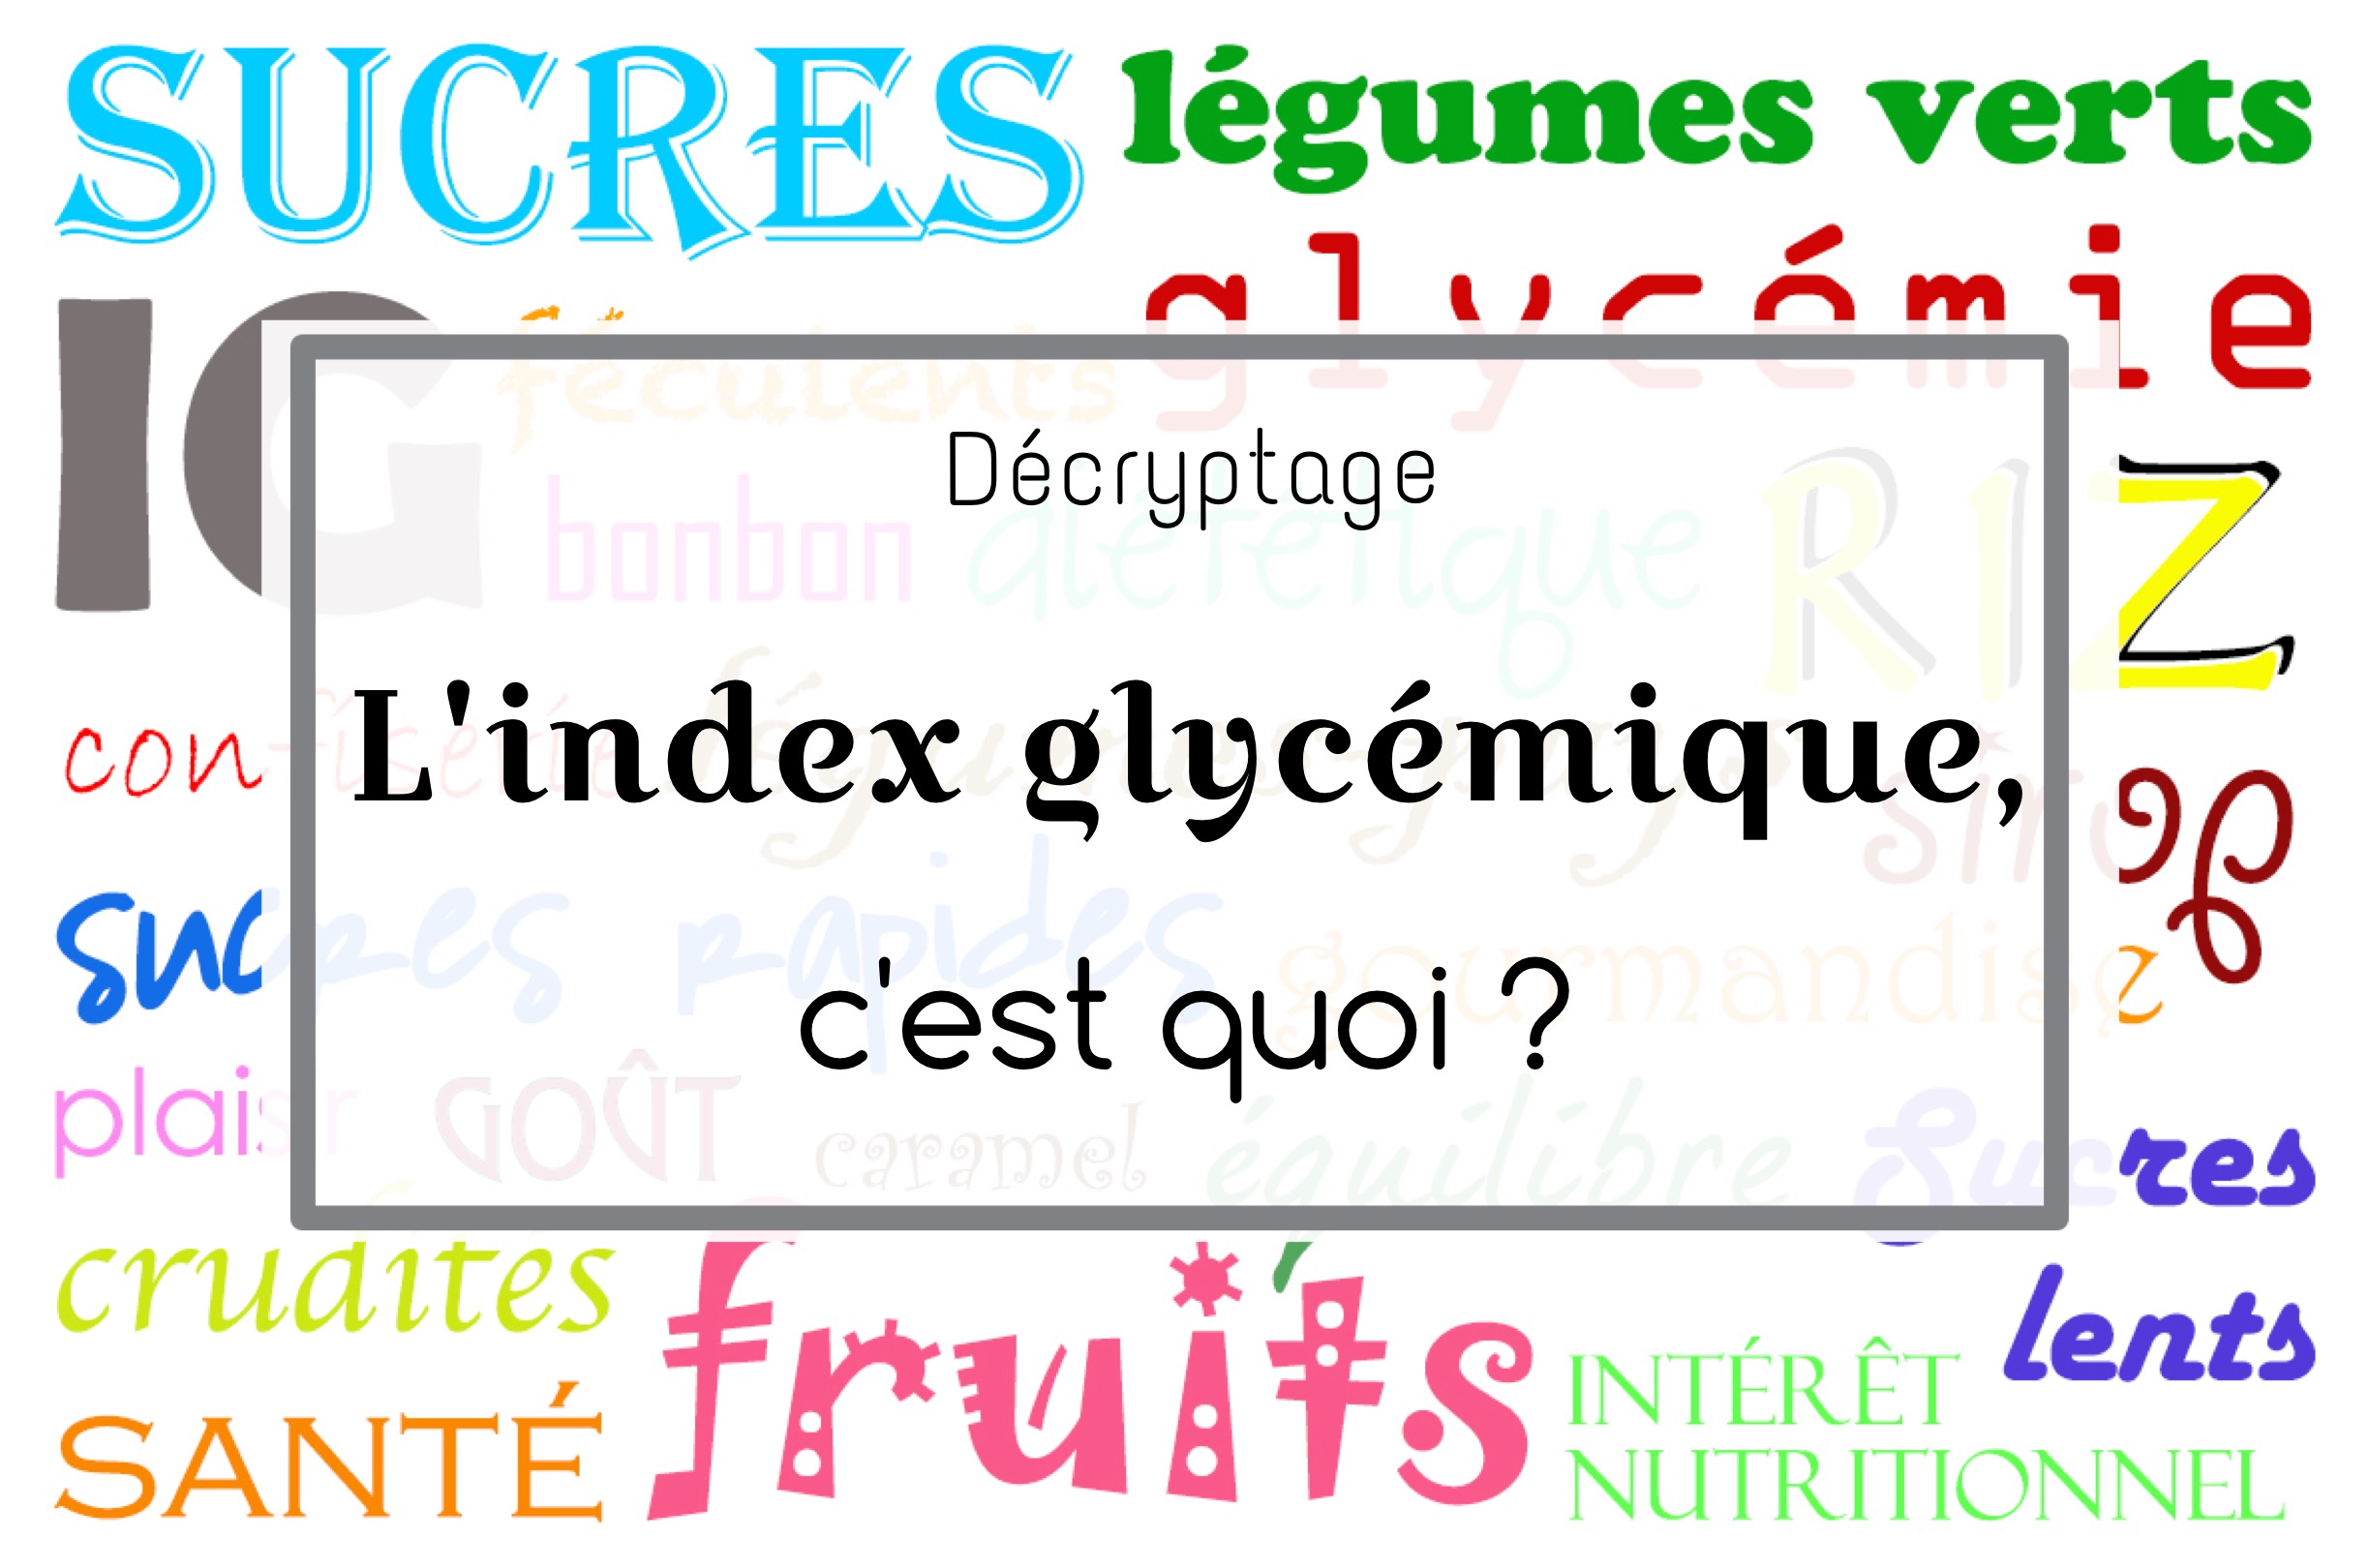 Tableaux des index glycémiques (IG) des aliments